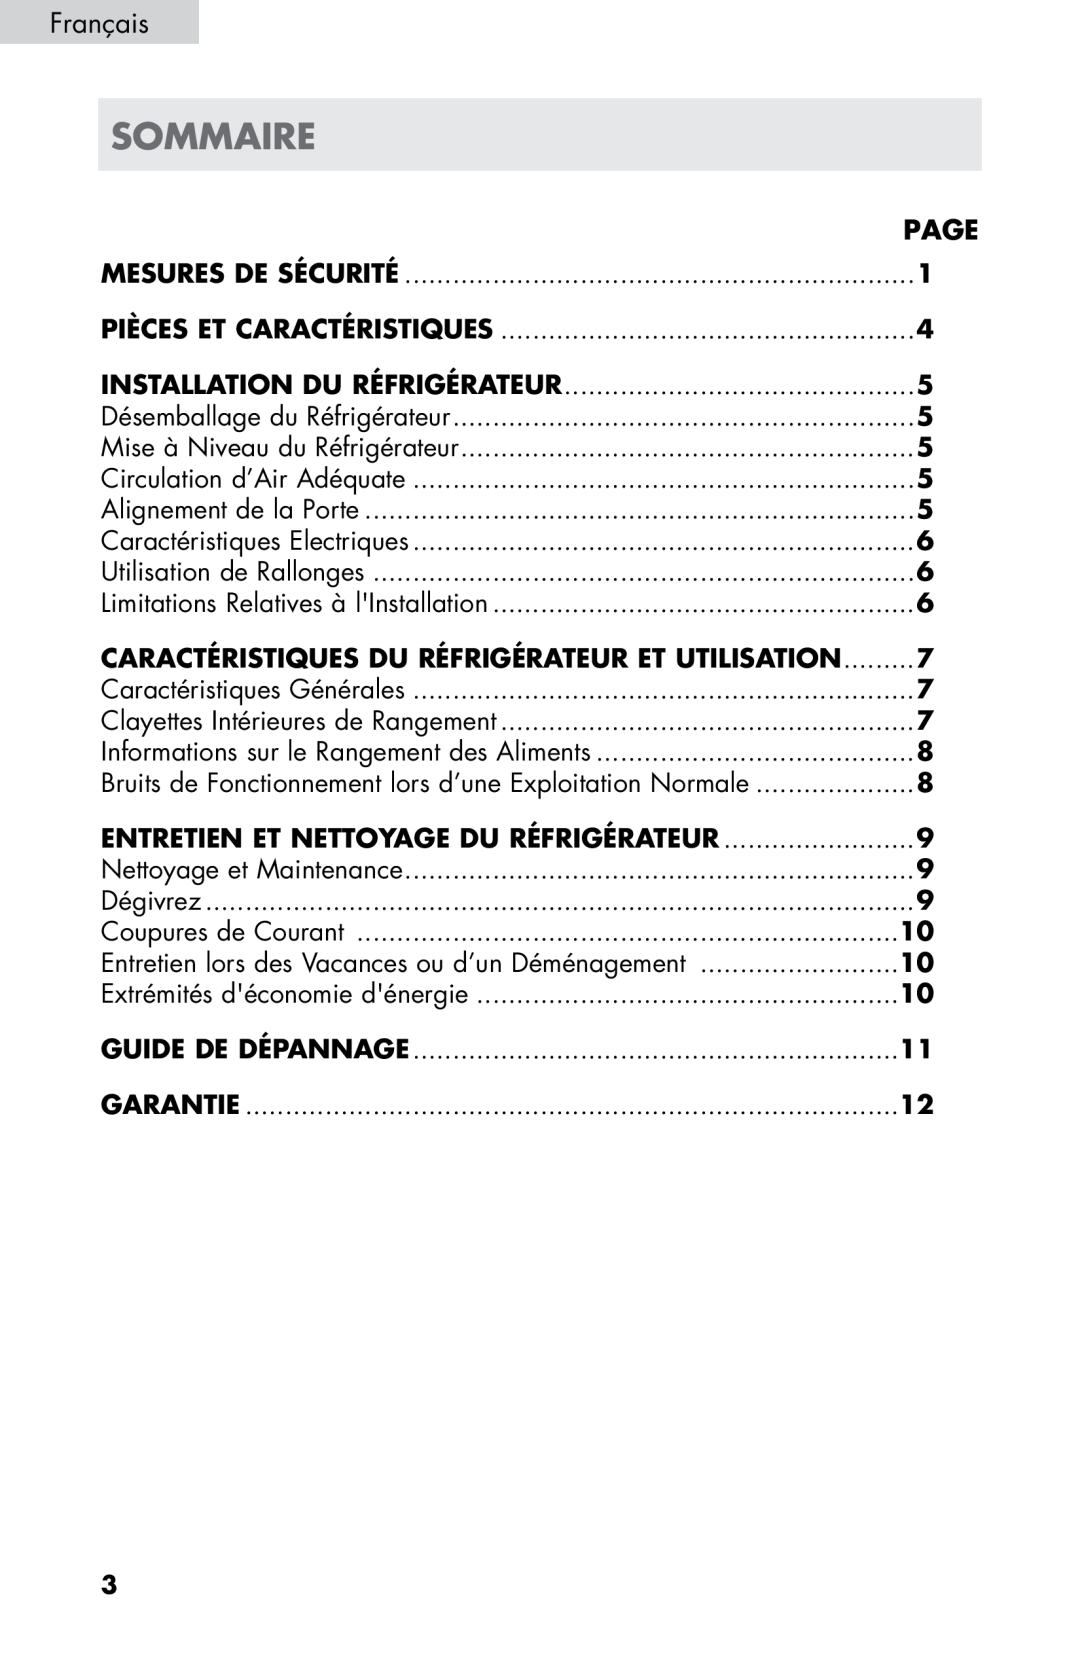 Haier HC17SF15RW Sommaire, Français, Guide De Dépannage, Page, Mesures De Sécurité, Pièces Et Caractéristiques, Dégivrez 